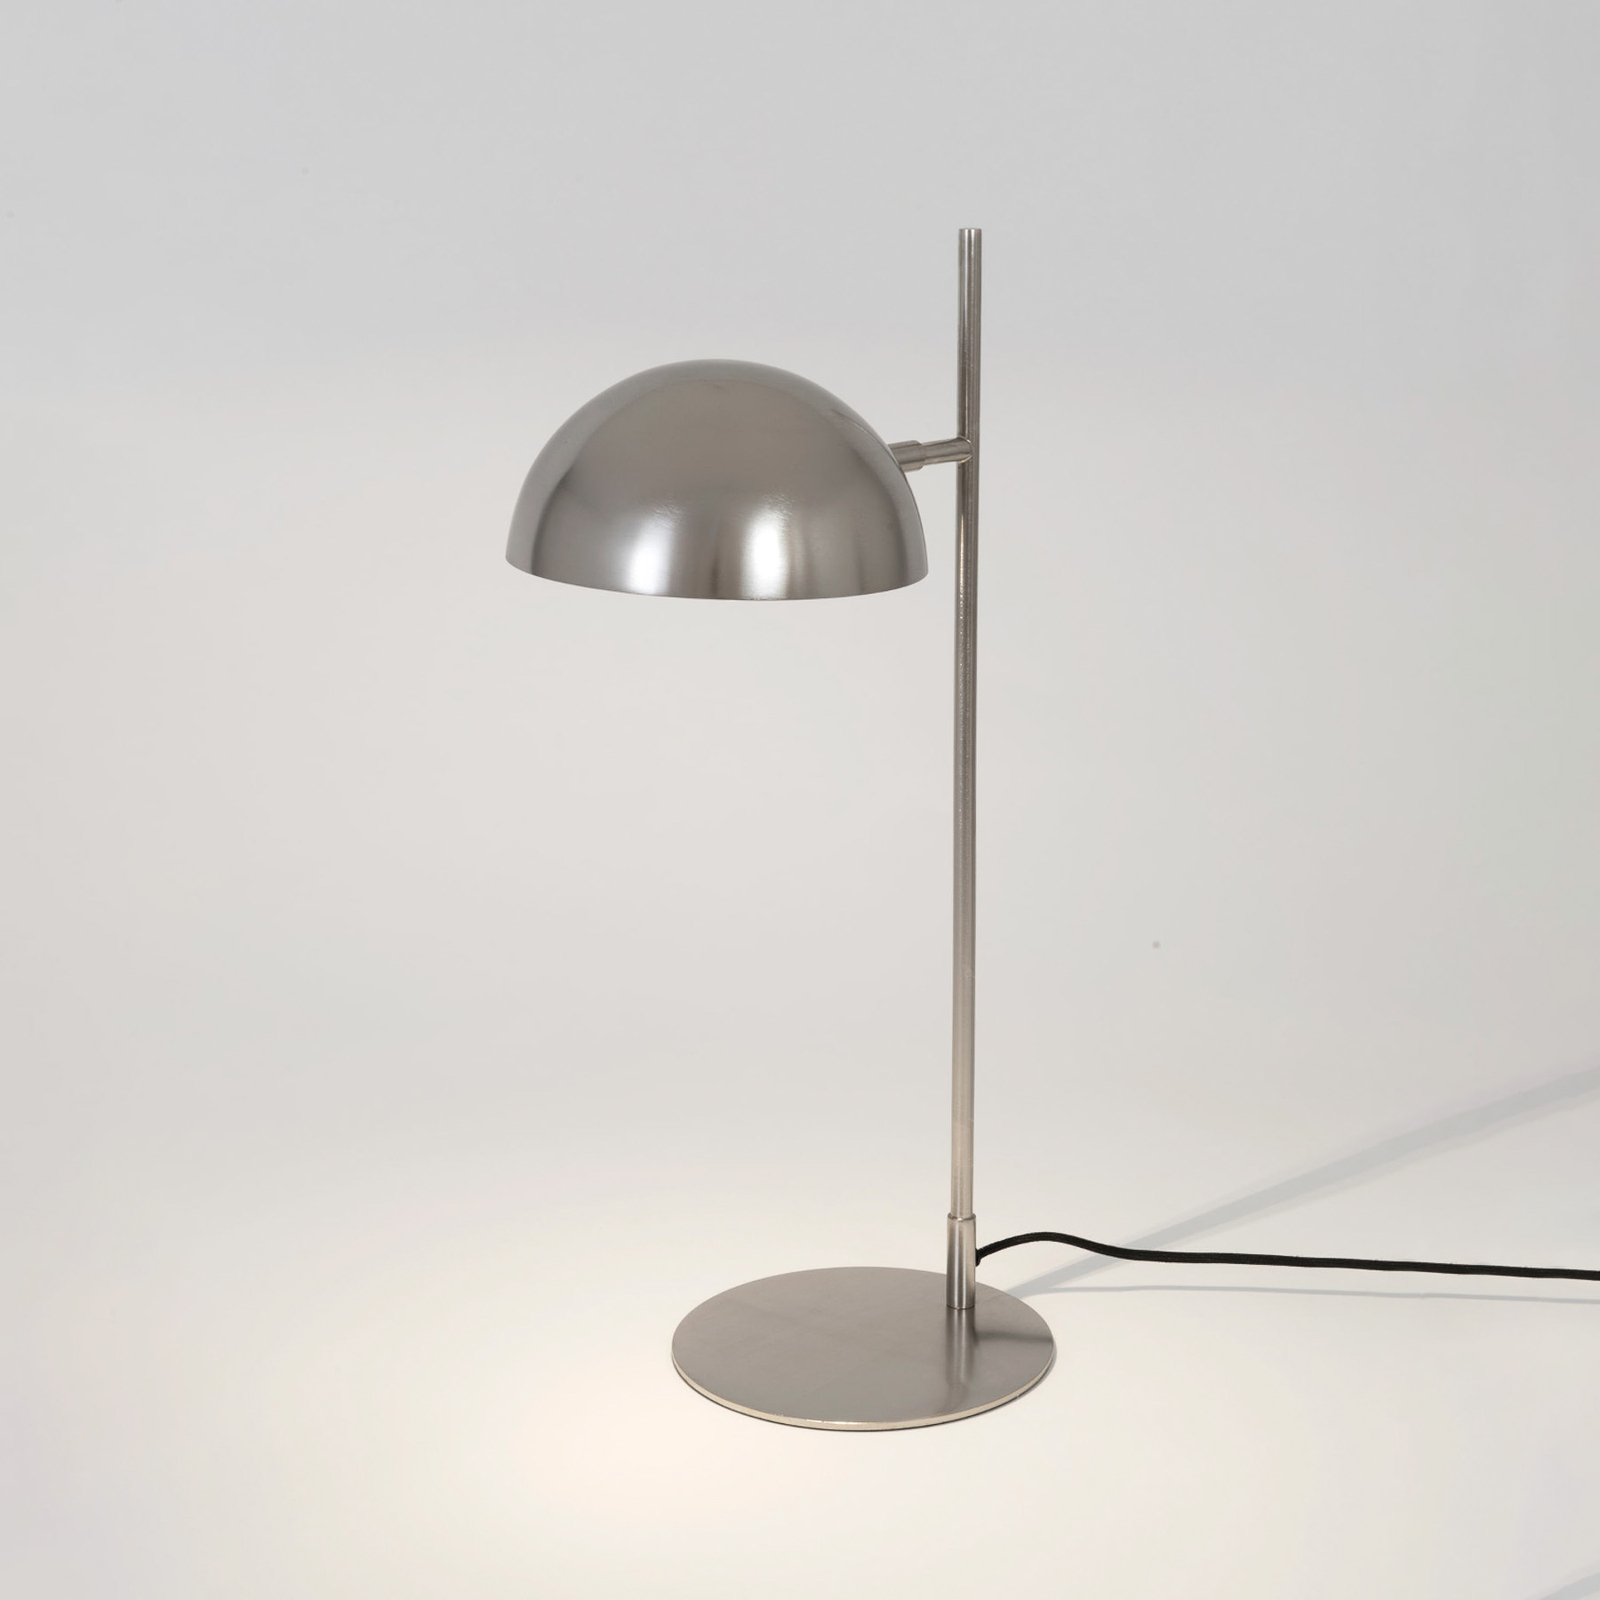 Miro asztali lámpa, ezüst színű, magasság 58 cm, vas/réz